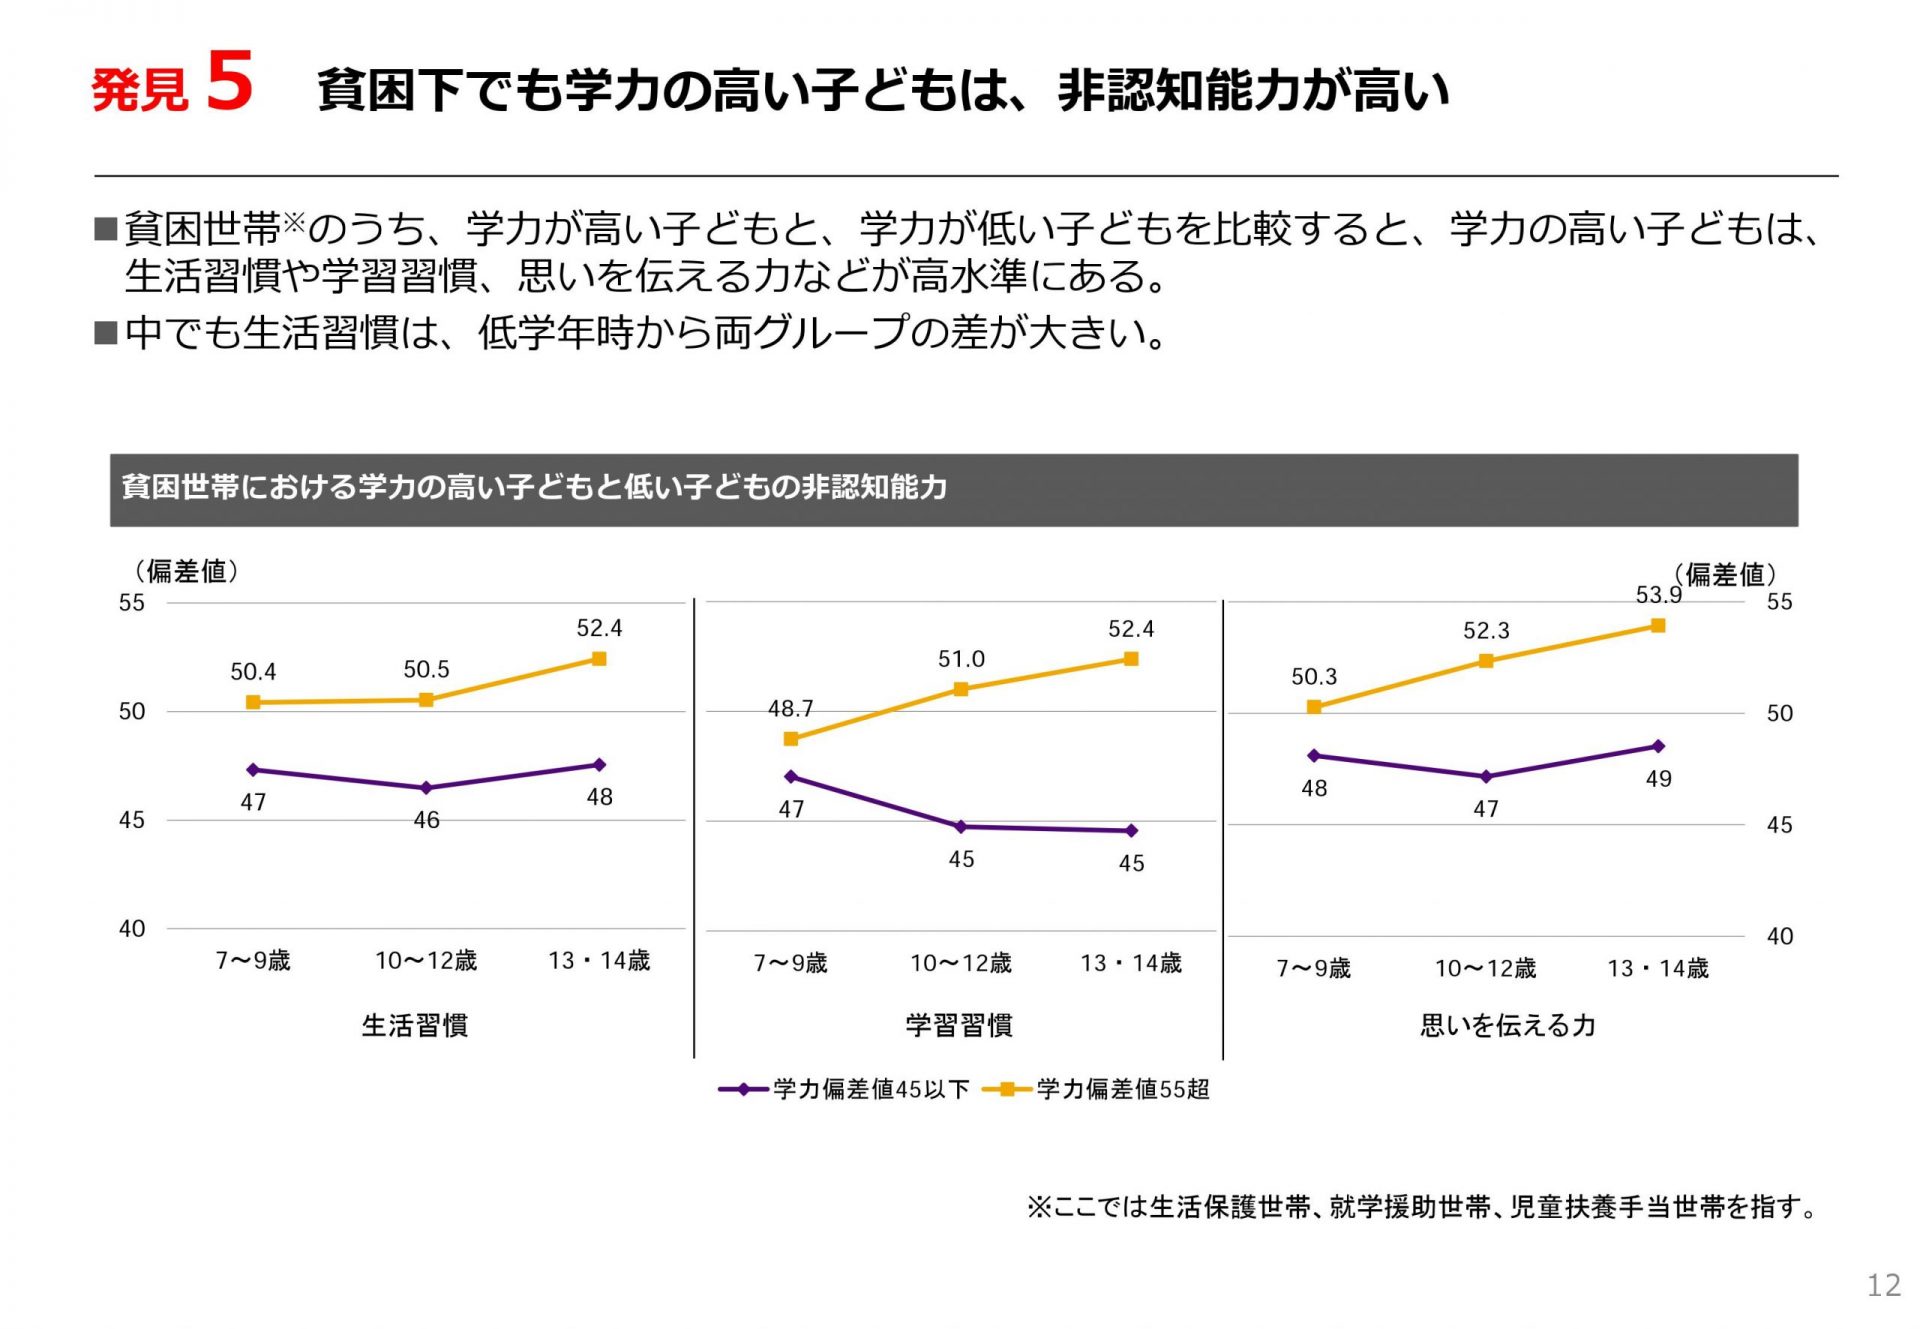 日本財団・家庭の経済格差と子どもの能力格差の関係分析（速報版）より引用